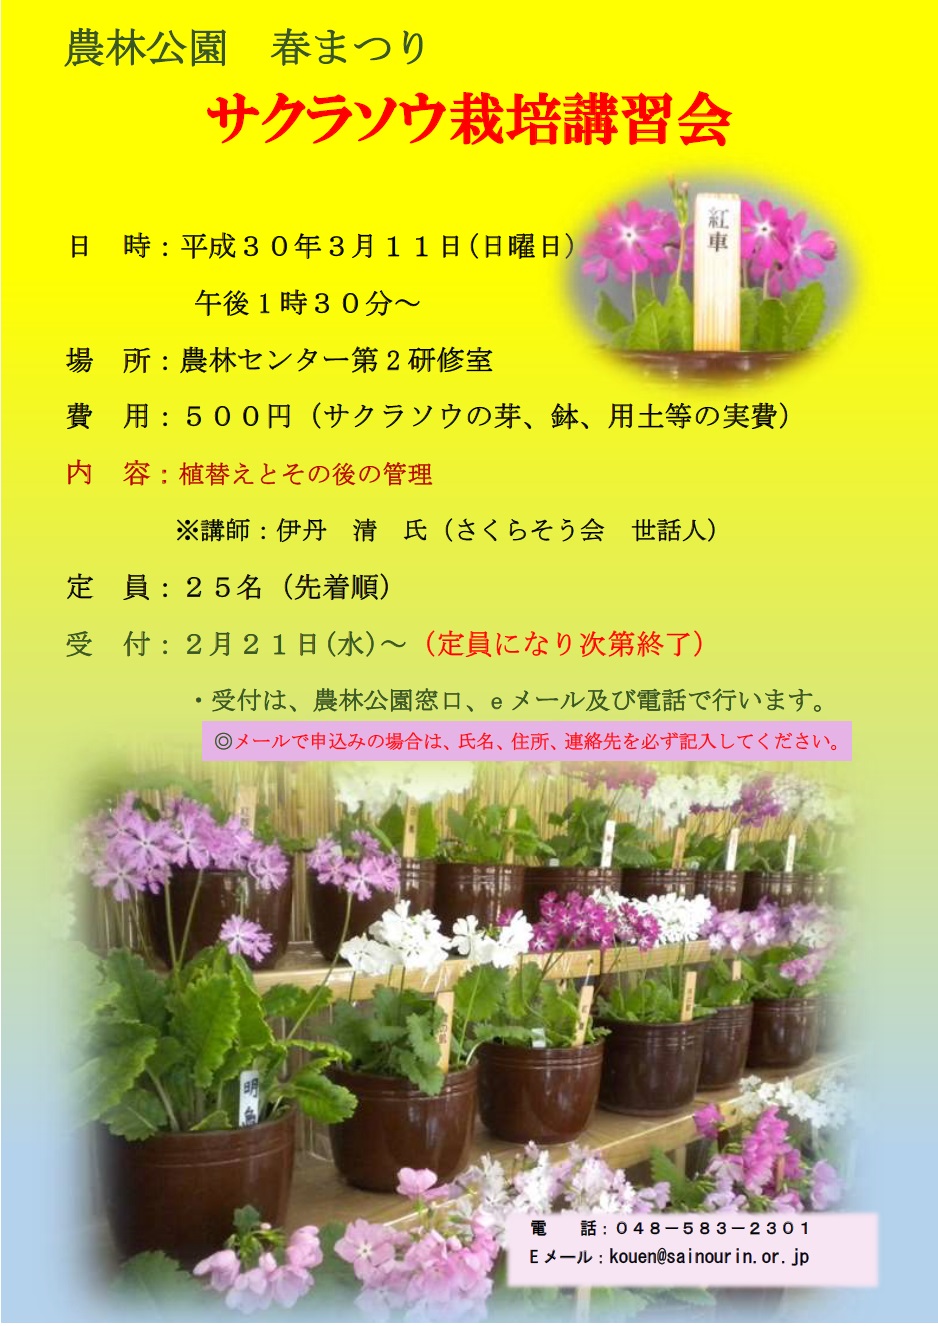 農林公園 サクラソウ栽培講習会 を開催します 埼玉県農林公園